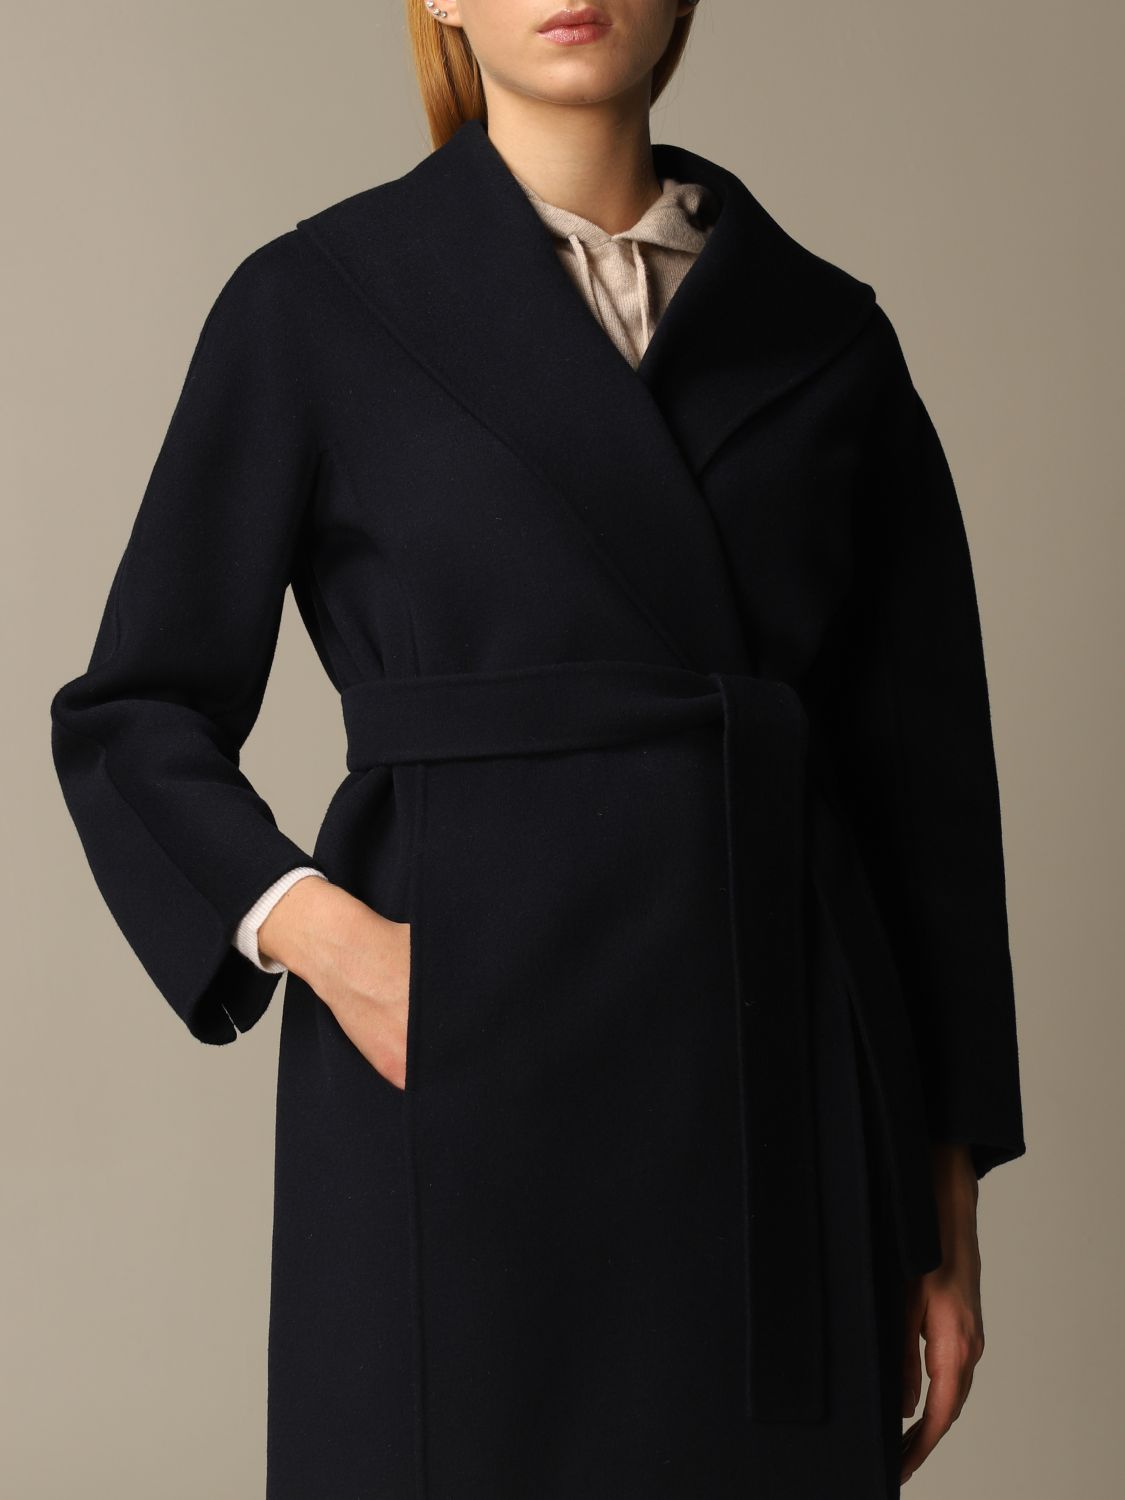 MAX MARA: dressing gown coat | Coat Max Mara Women Blue | Coat Max Mara